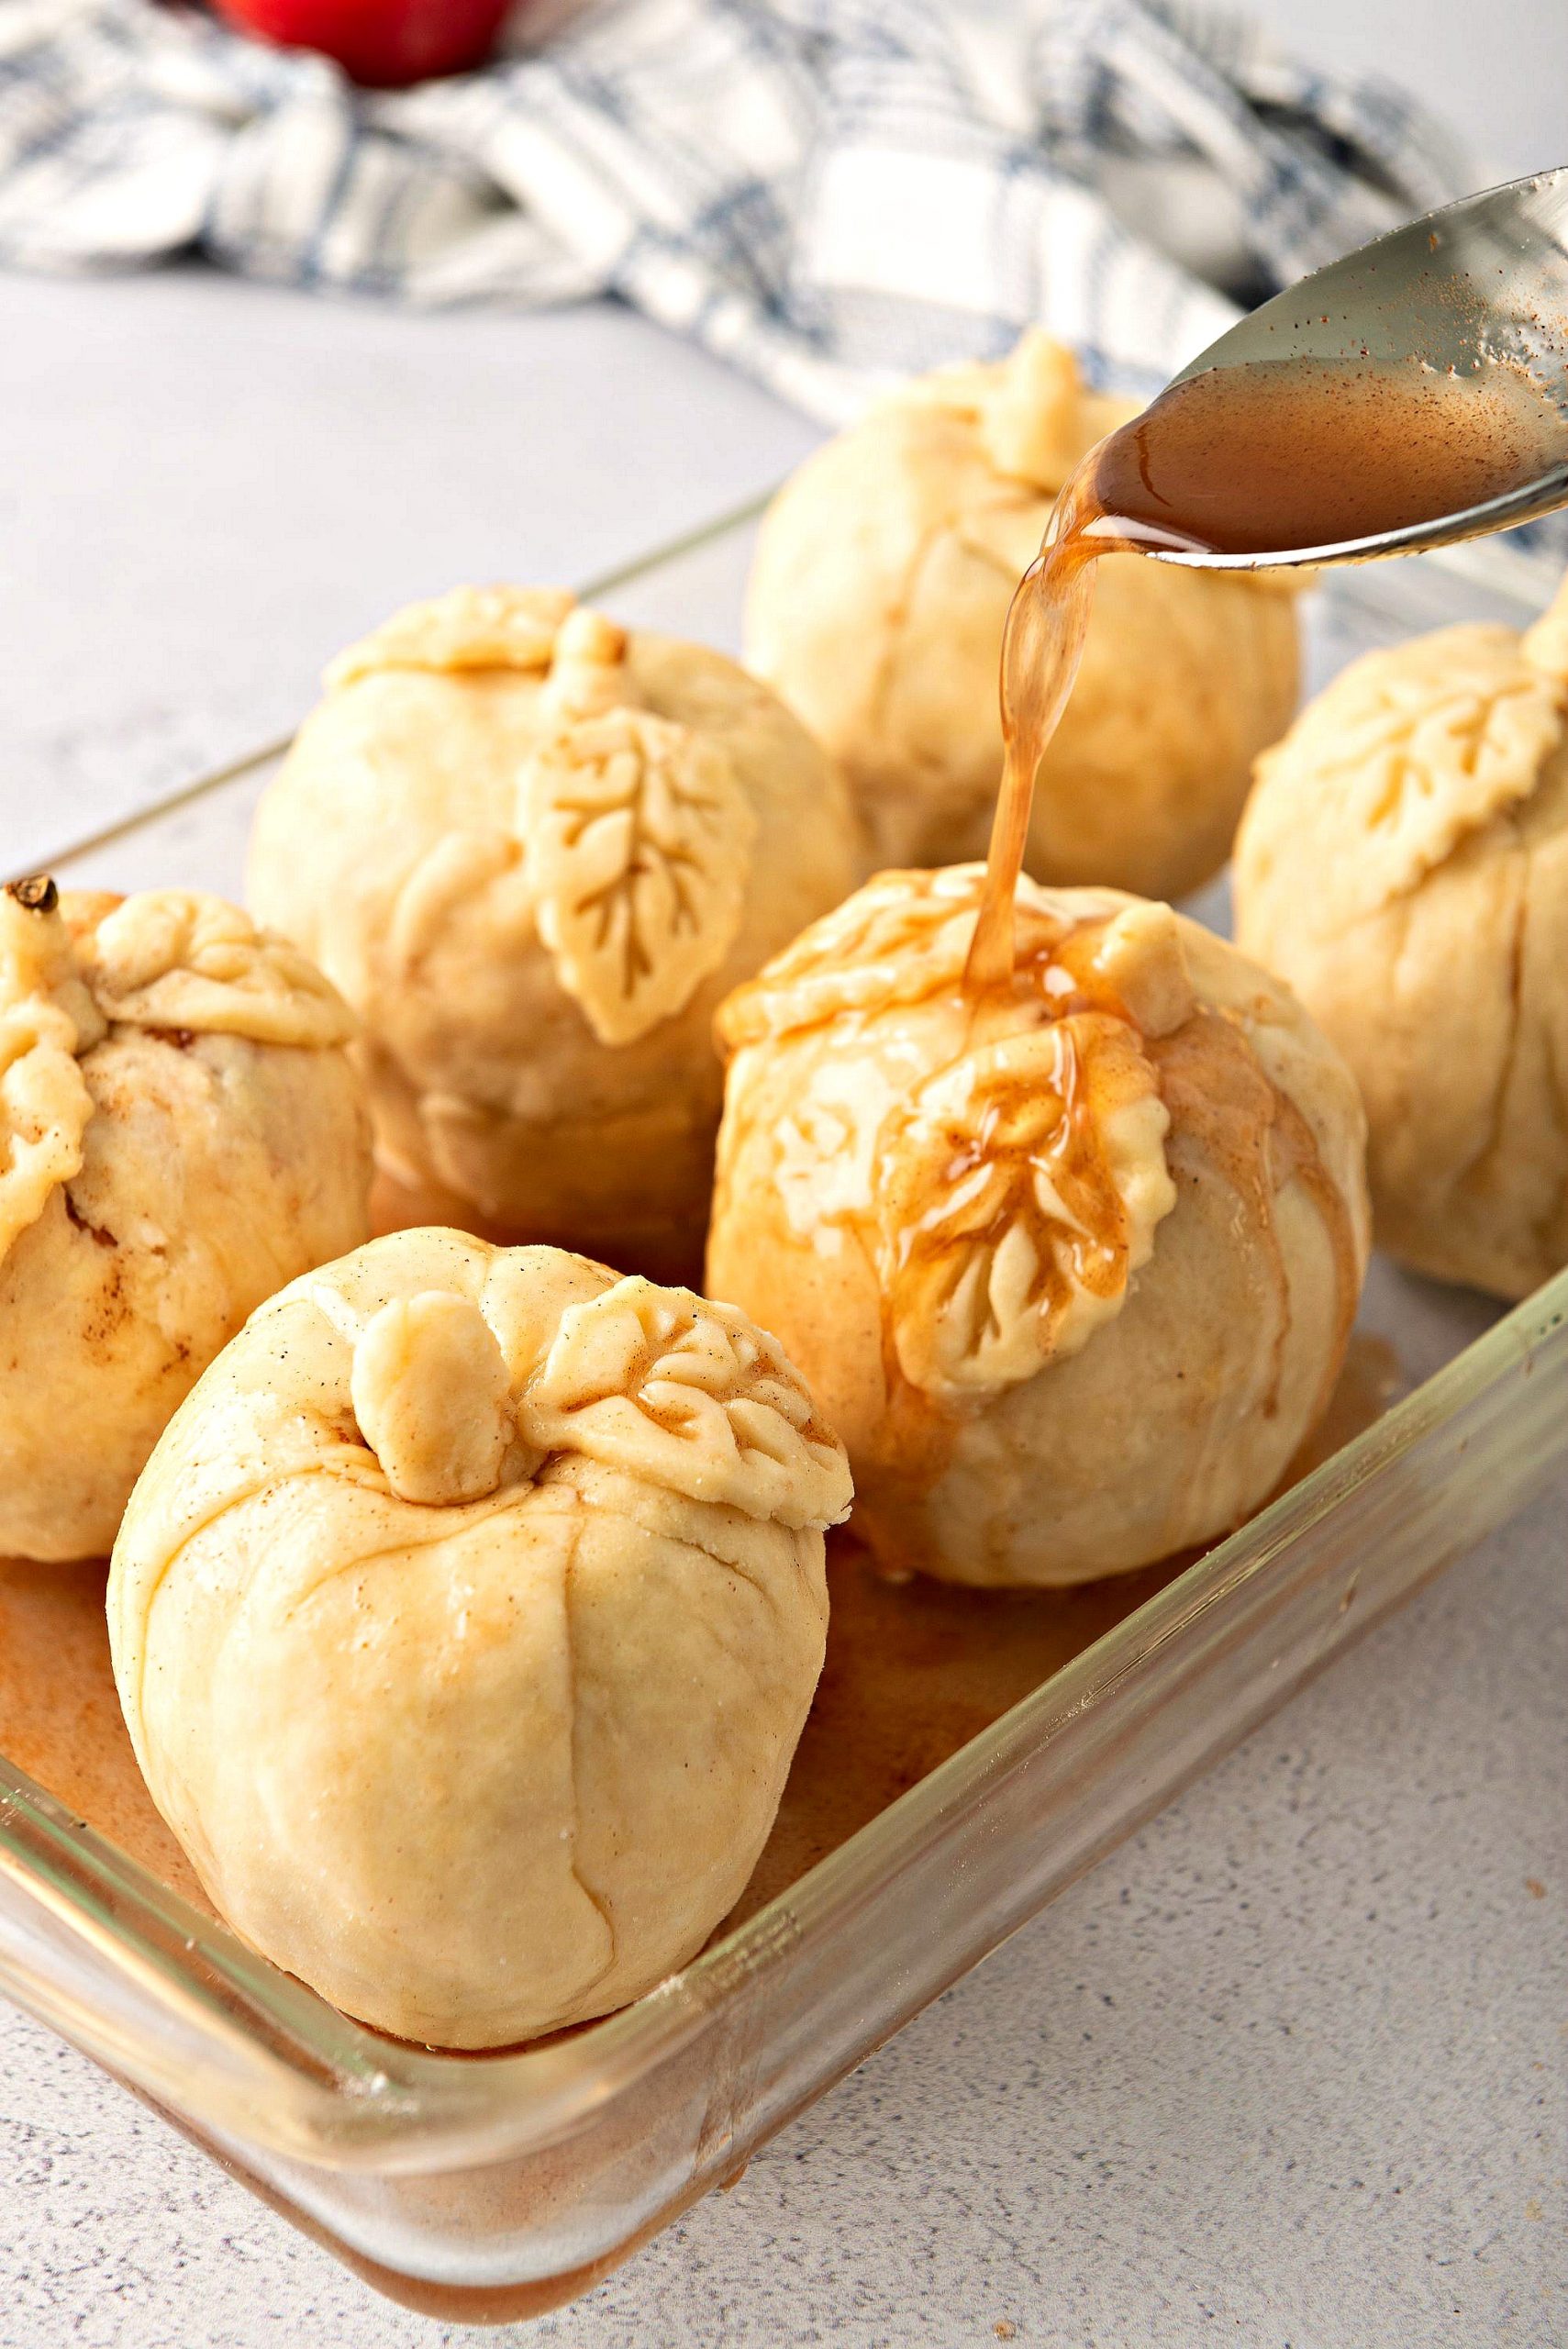 Homemade Apple Dumplings